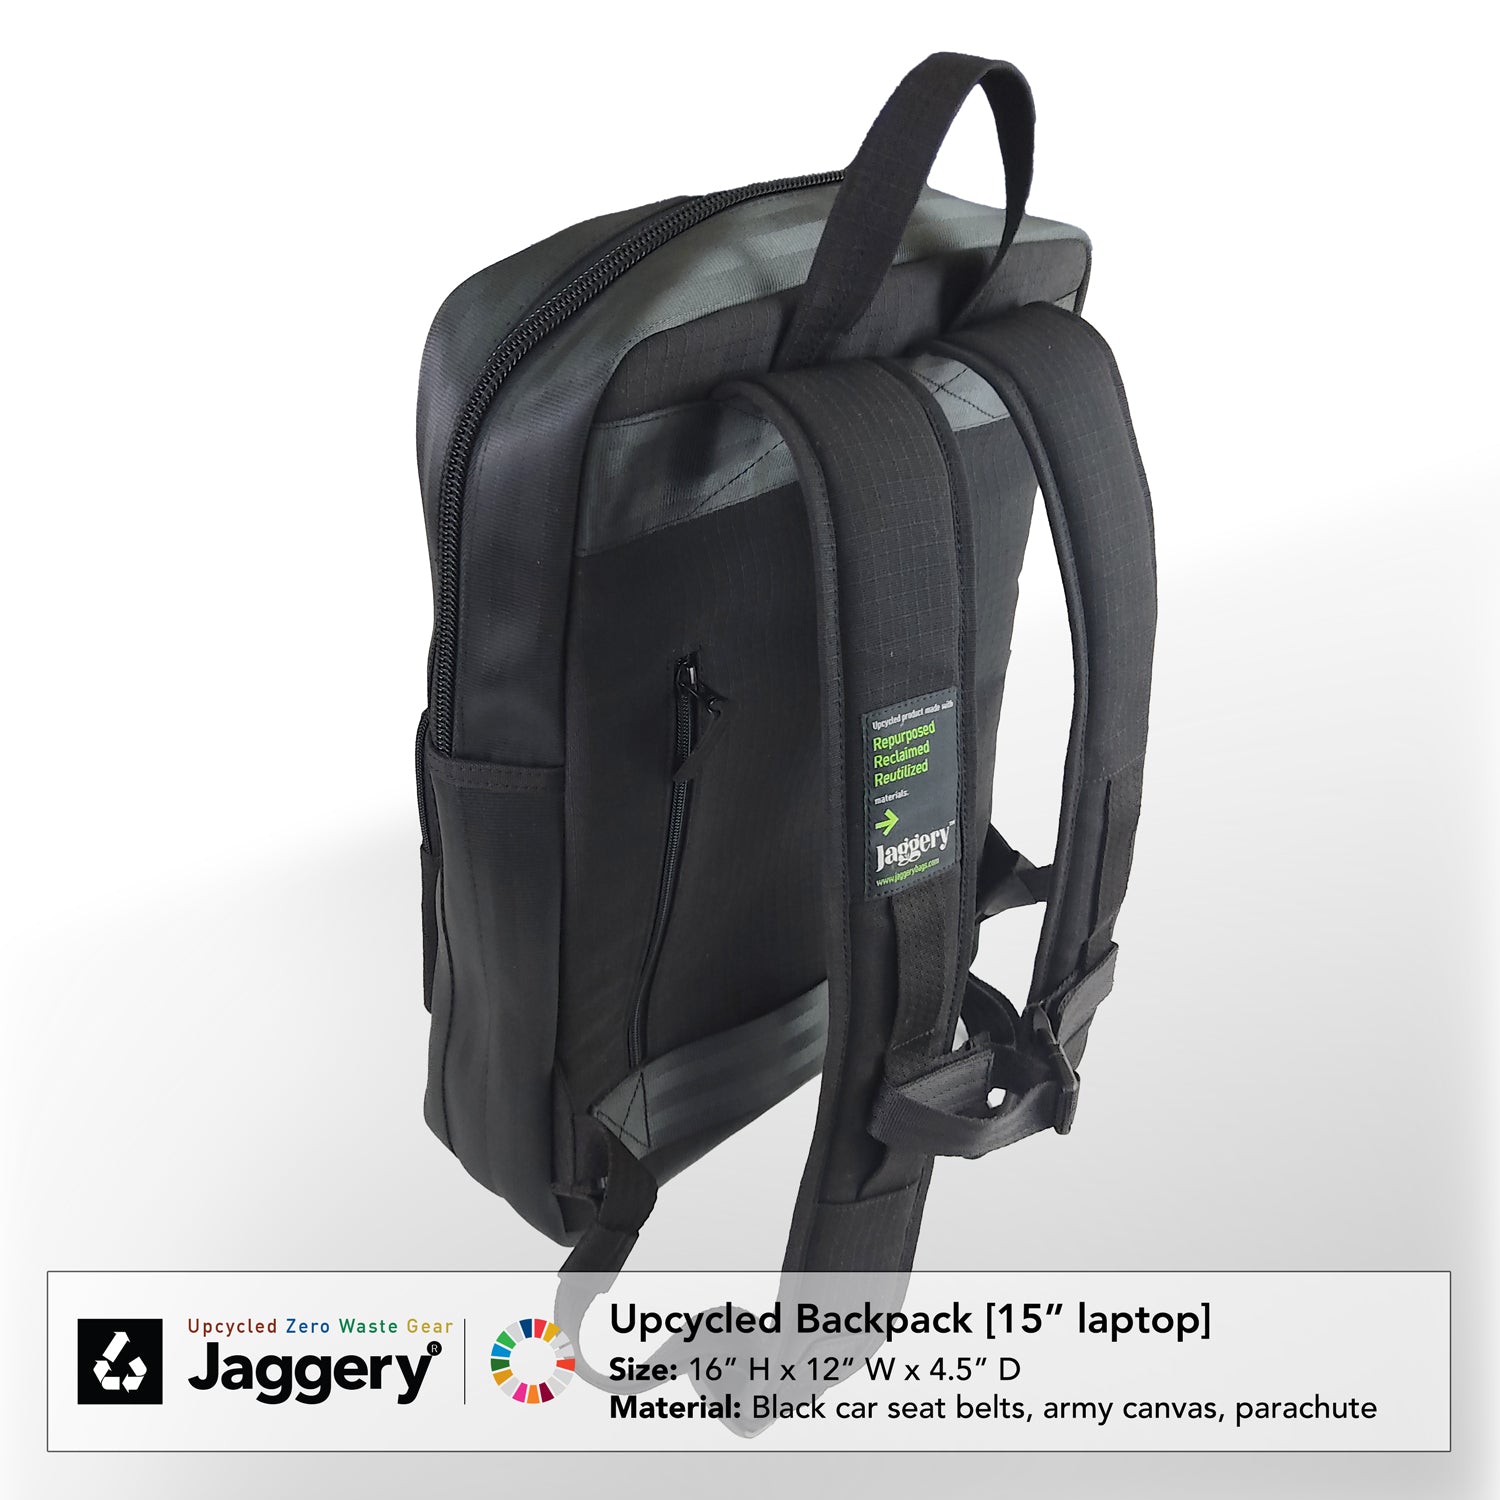 Pervasive Backpack in Black Car Seat Belts [15"laptop bag]